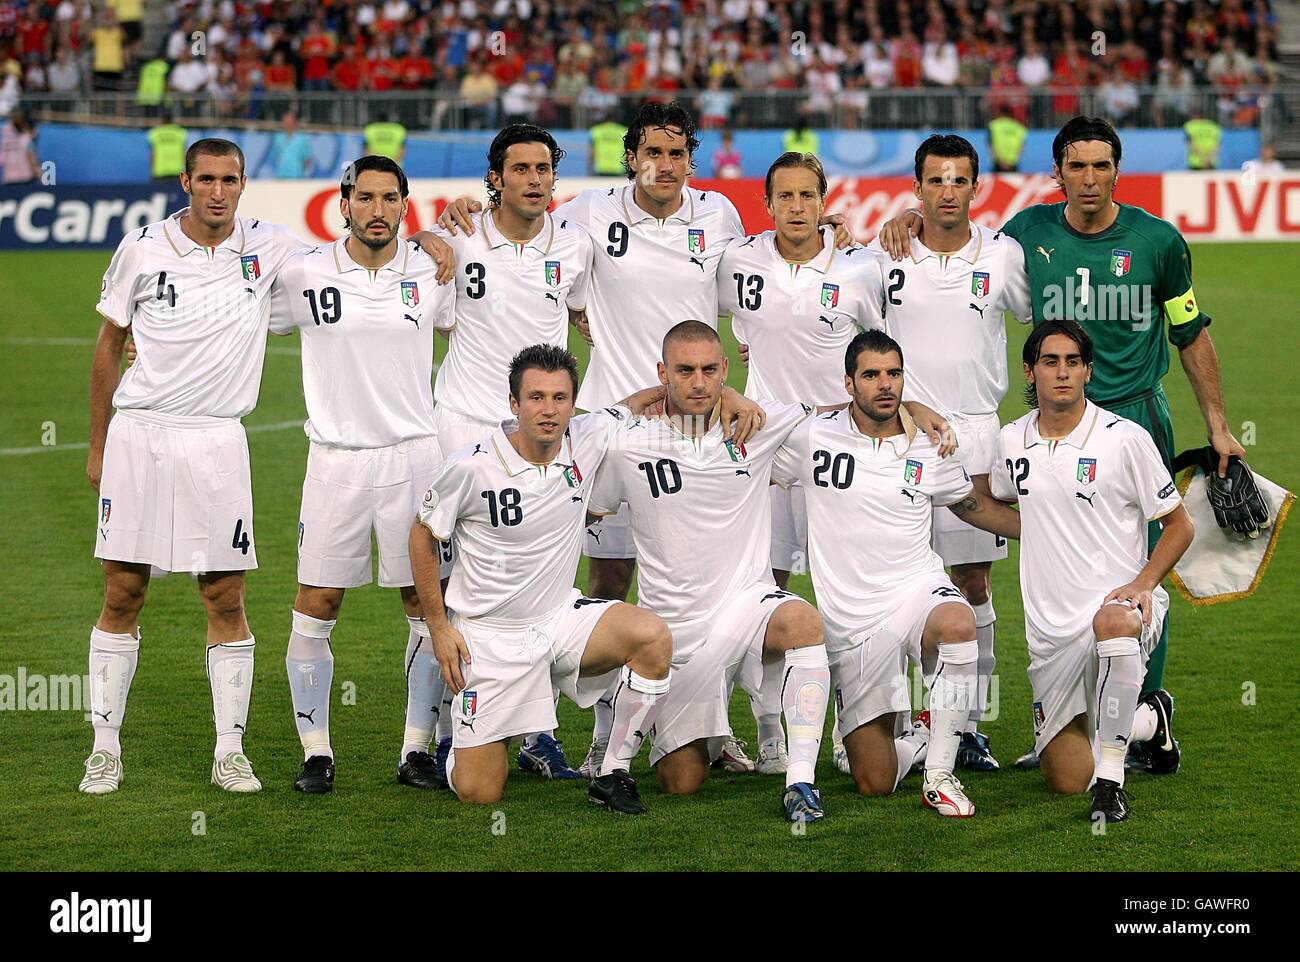 Calcio - Campionato europeo UEFA 2008 - Quarta finale - Spagna v Italia -  Stadio Ernst Happel. La squadra italiana si allineerà prima della partita  Foto stock - Alamy